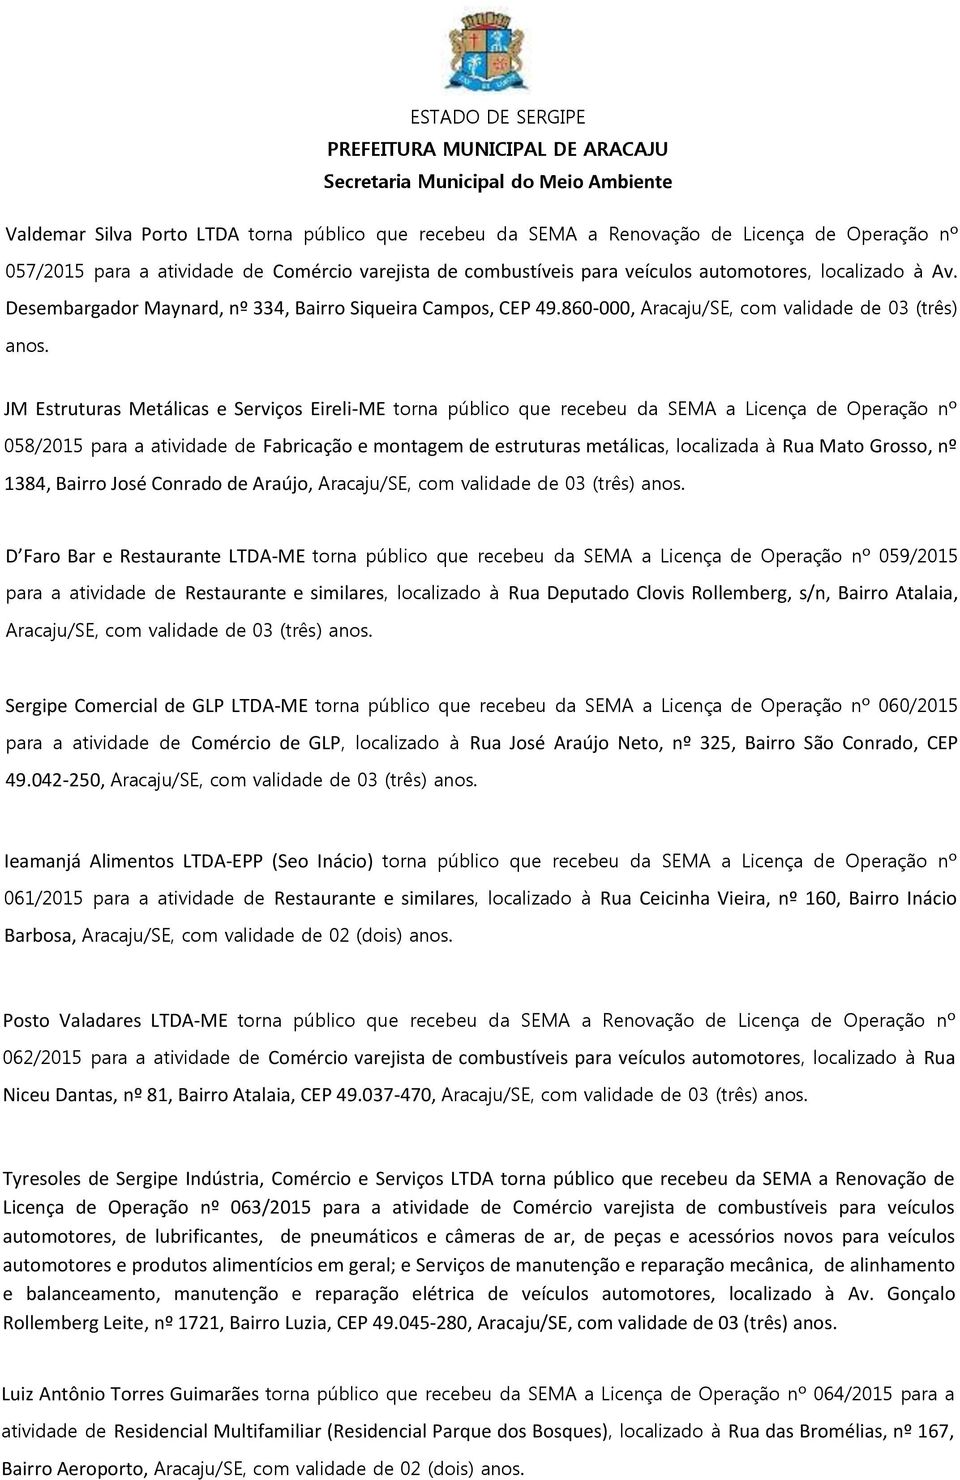 JM Estruturas Metálicas e Serviços Eireli-ME torna público que recebeu da SEMA a Licença de Operação nº 058/2015 para a atividade de Fabricação e montagem de estruturas metálicas, localizada à Rua